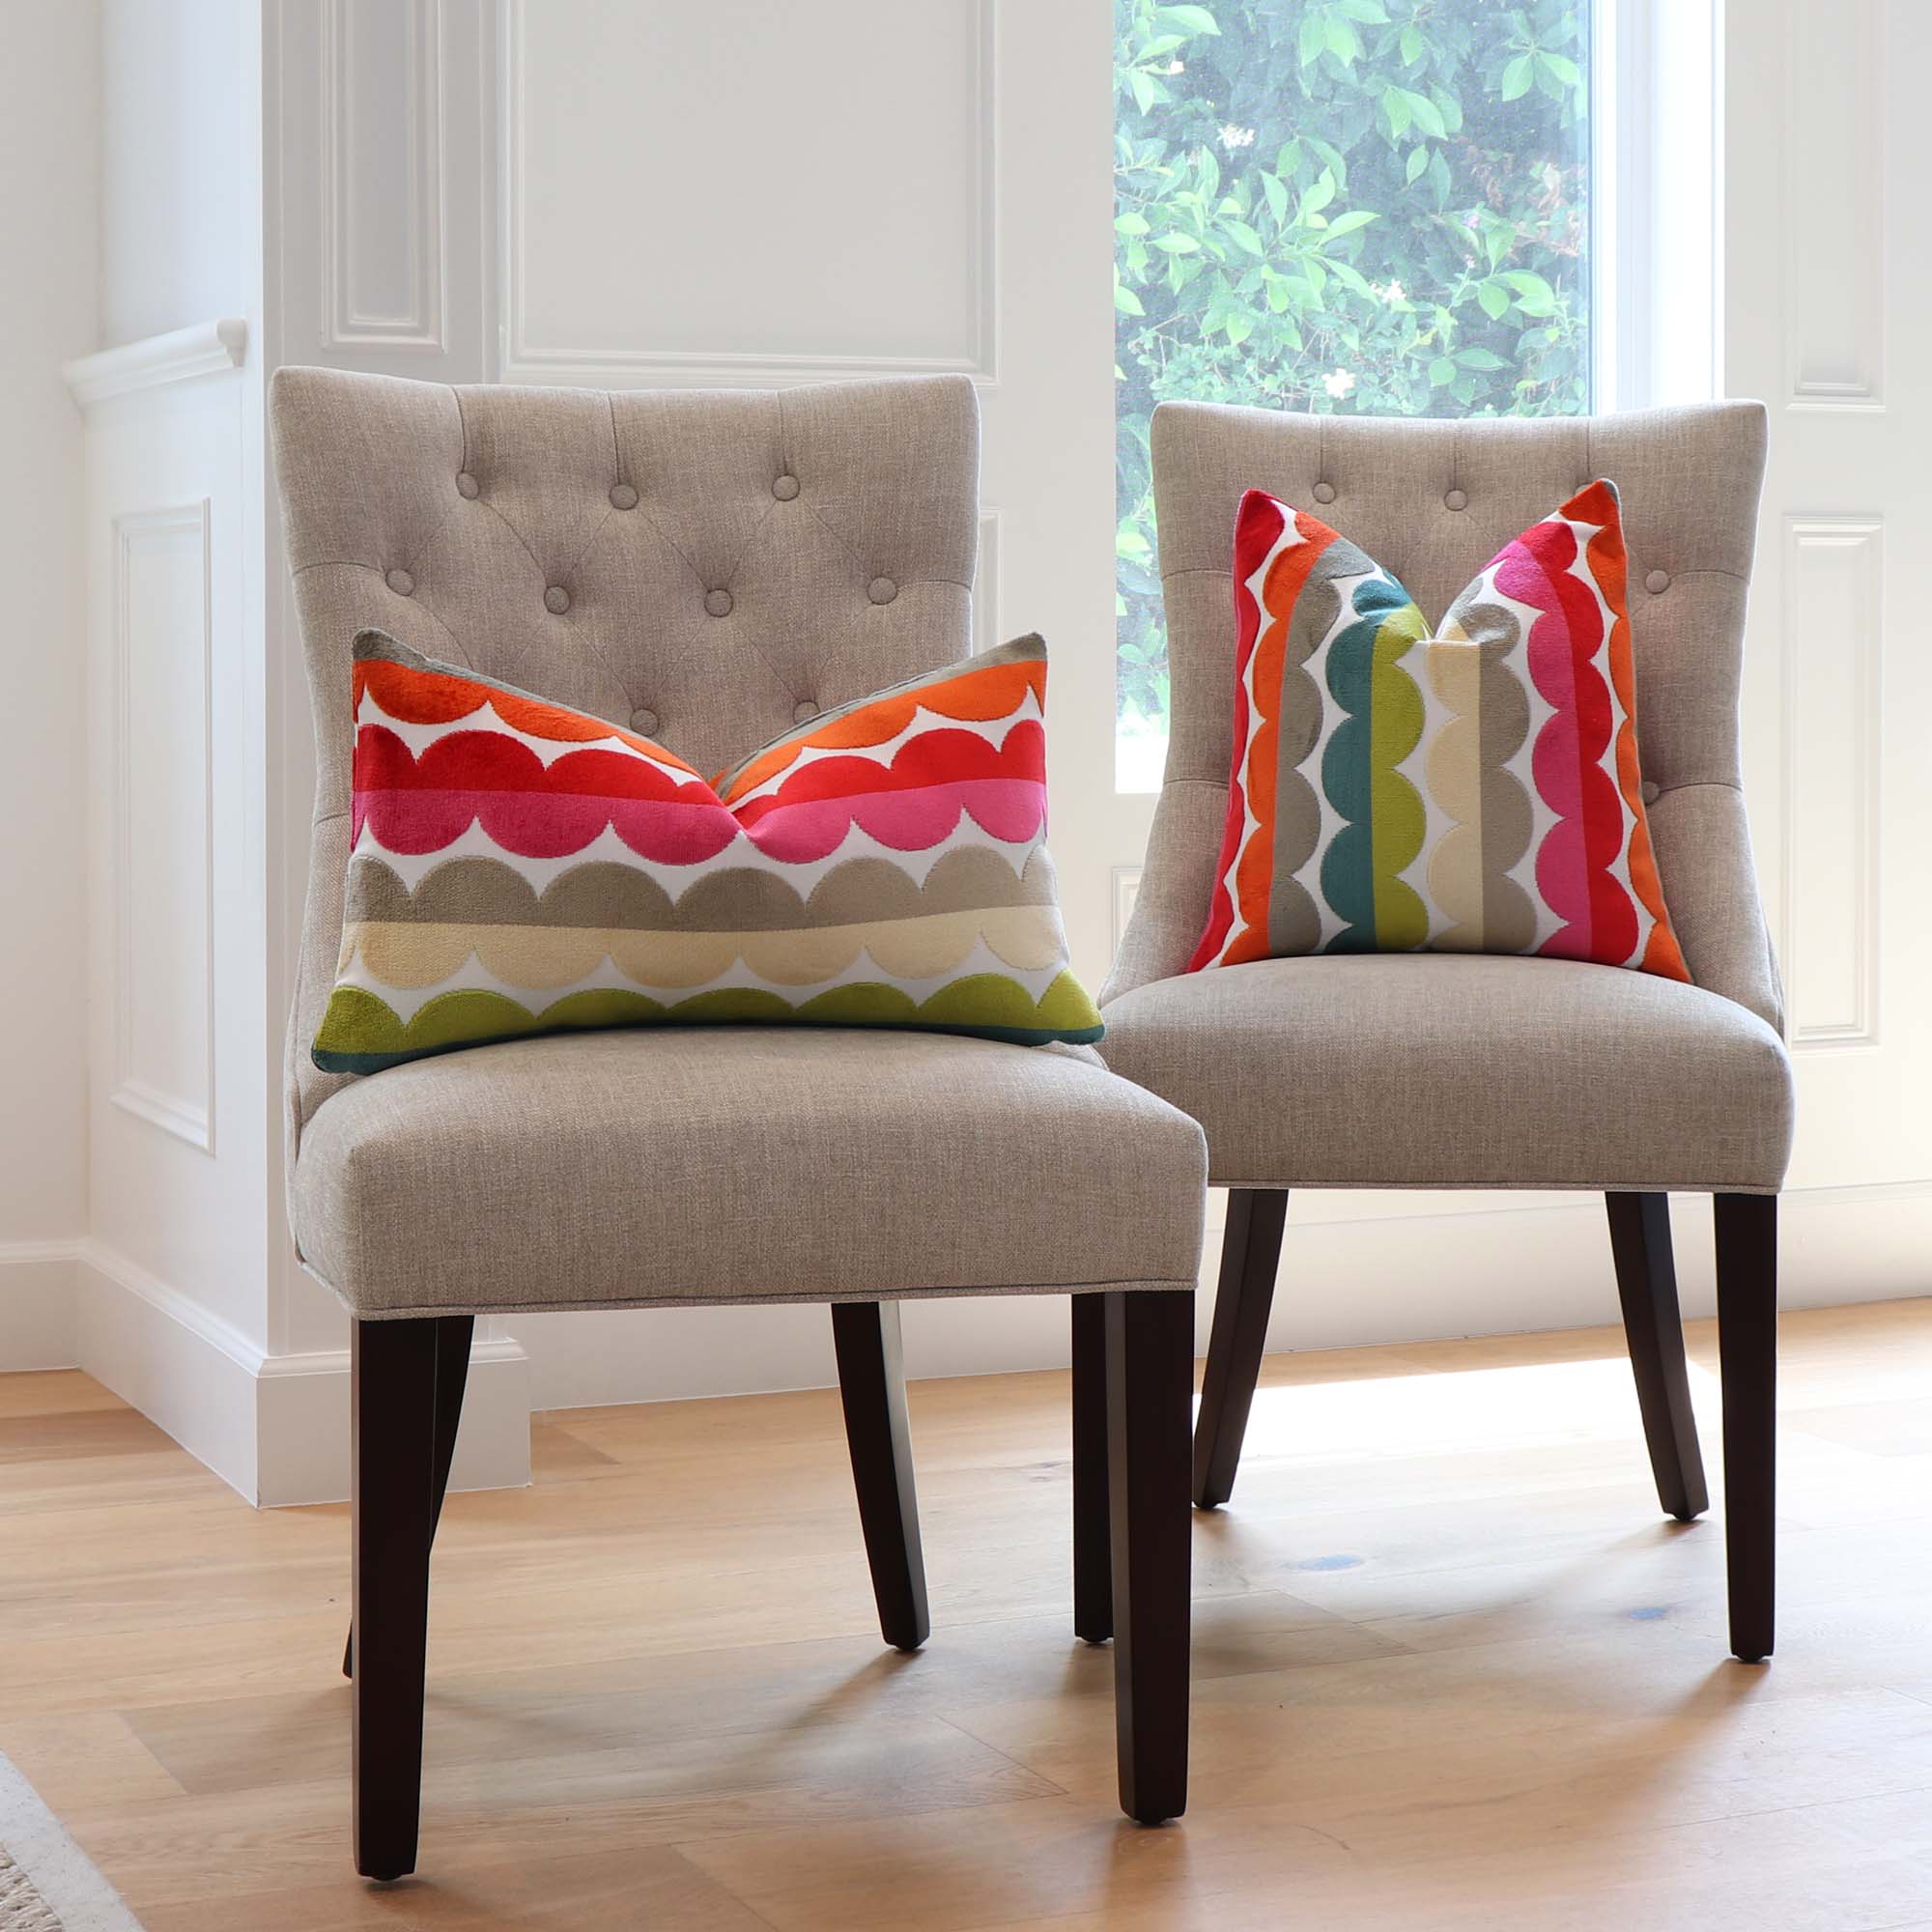 Kravet Jonathan Adler Curvy Velvet Stripes Designer Luxury Decorative Throw  Pillow Cover on Dining Chairs in Home Decor